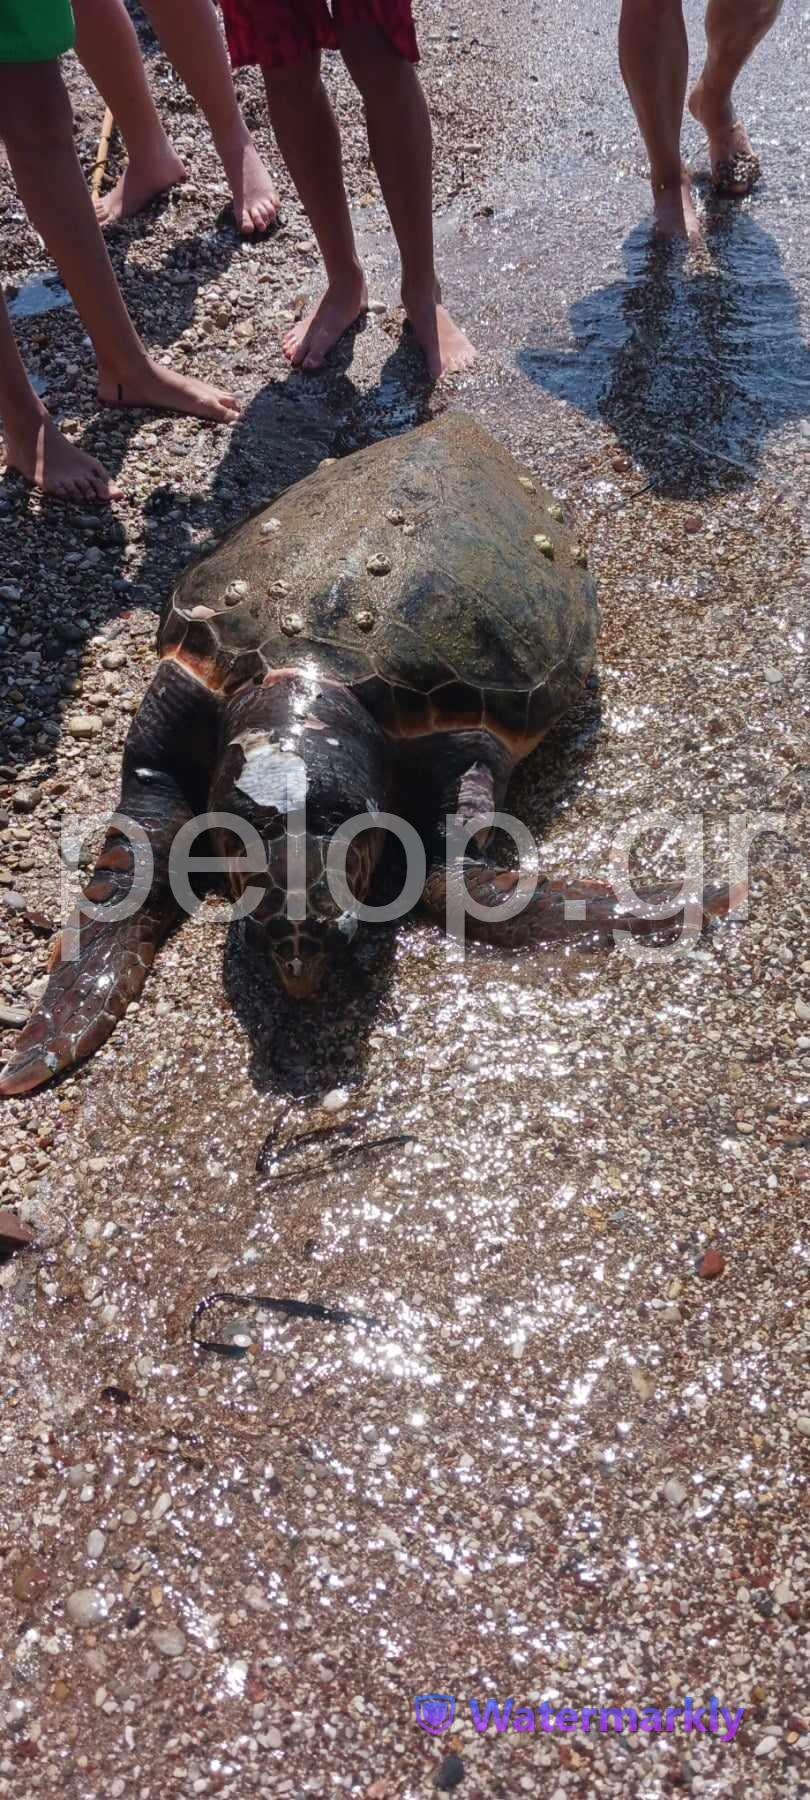 Πάτρα: Βρέθηκε νεκρή χελώνα στα Βραχνέικα - Κλήθηκε το Λιμενικό ΦΩΤΟ